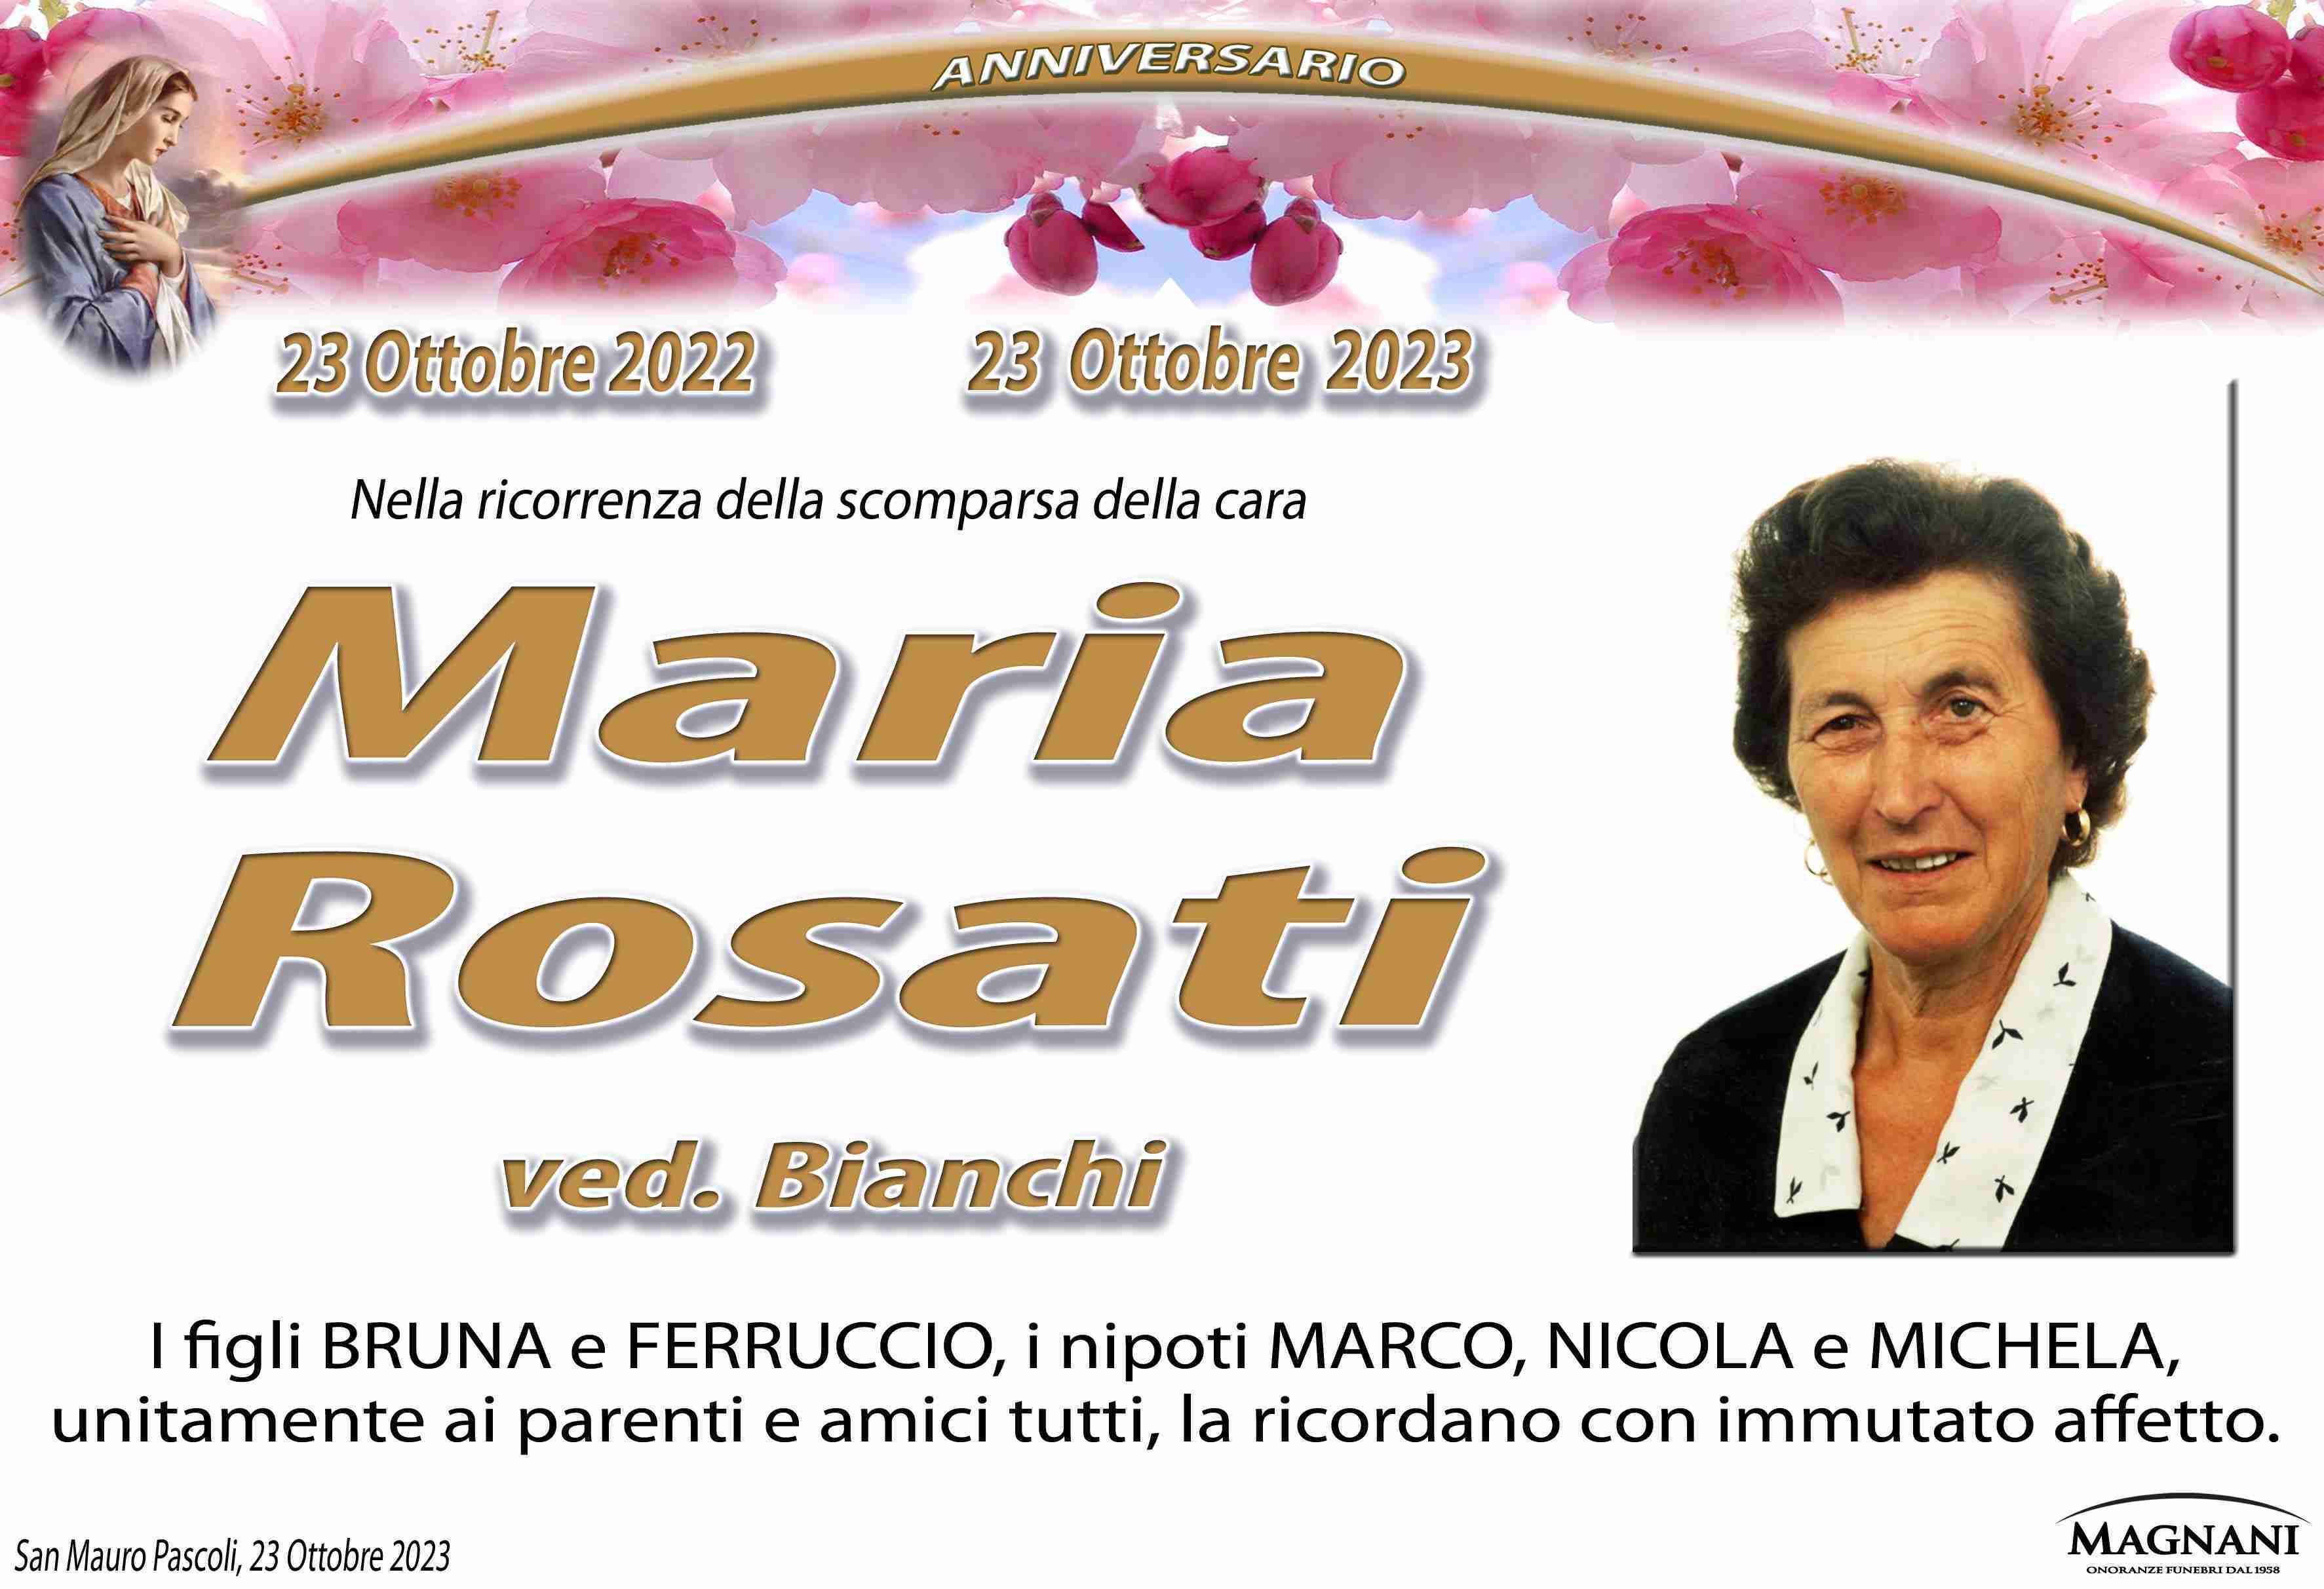 Maria Rosati